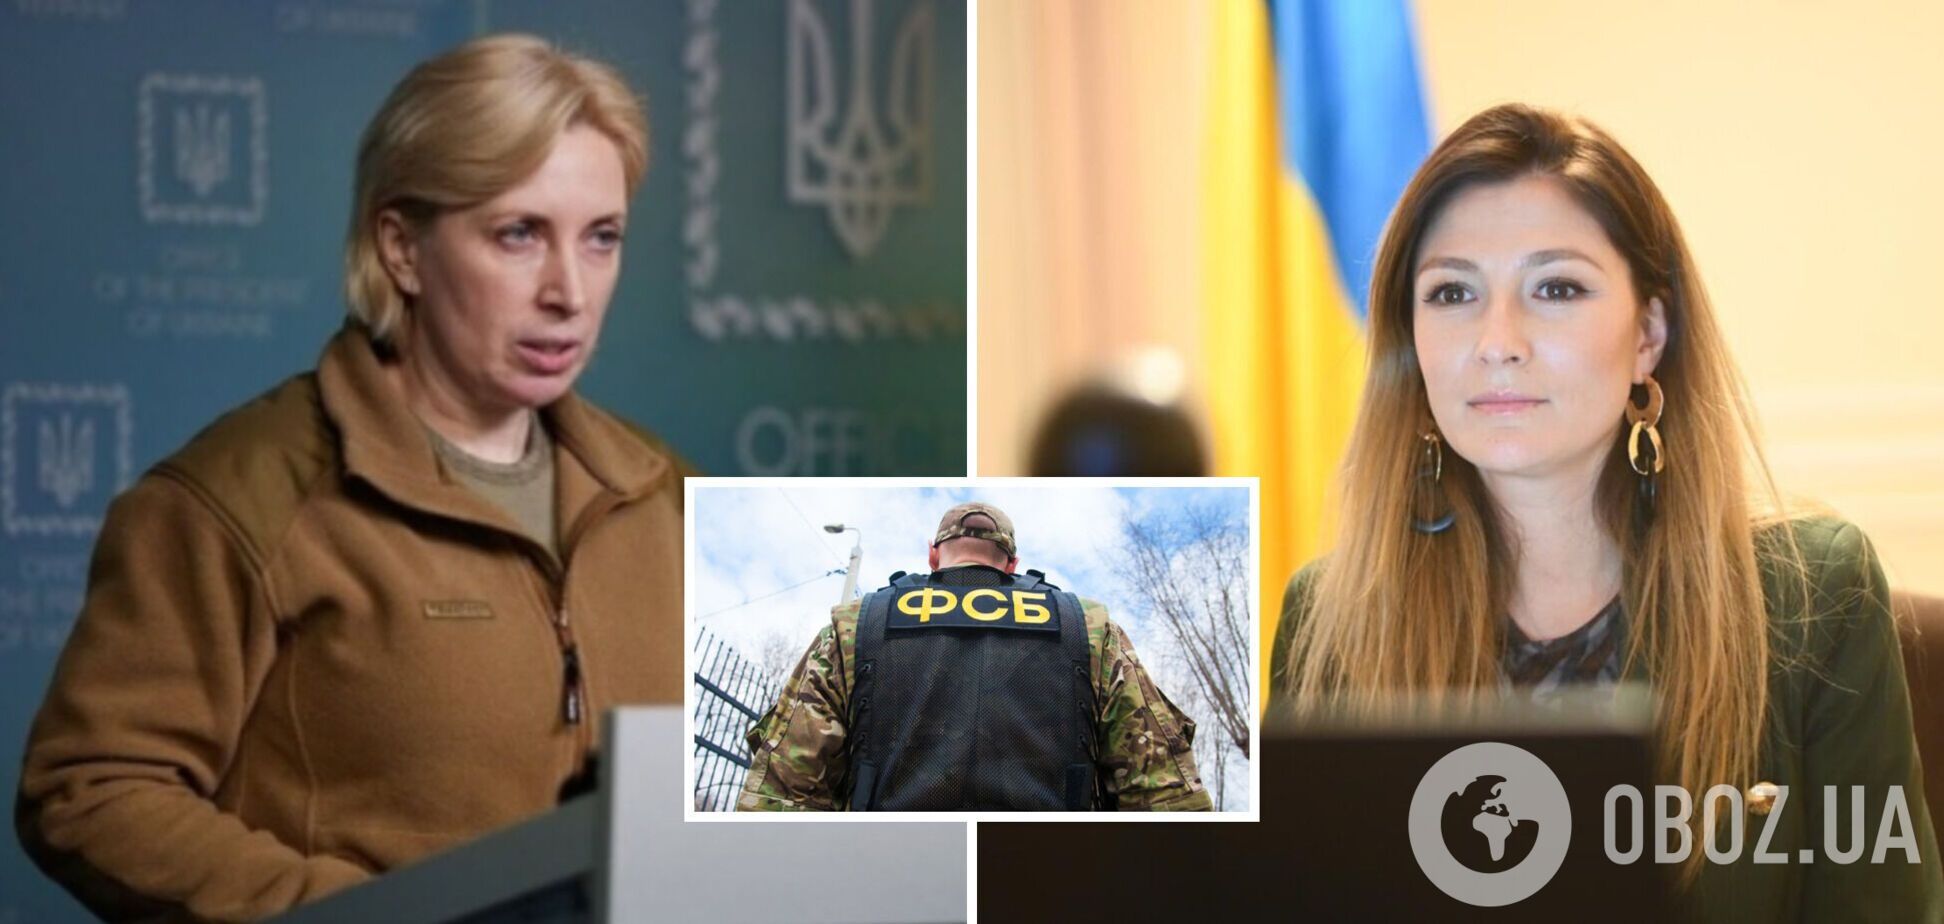 ФСБ объявила в розыск украинских чиновниц